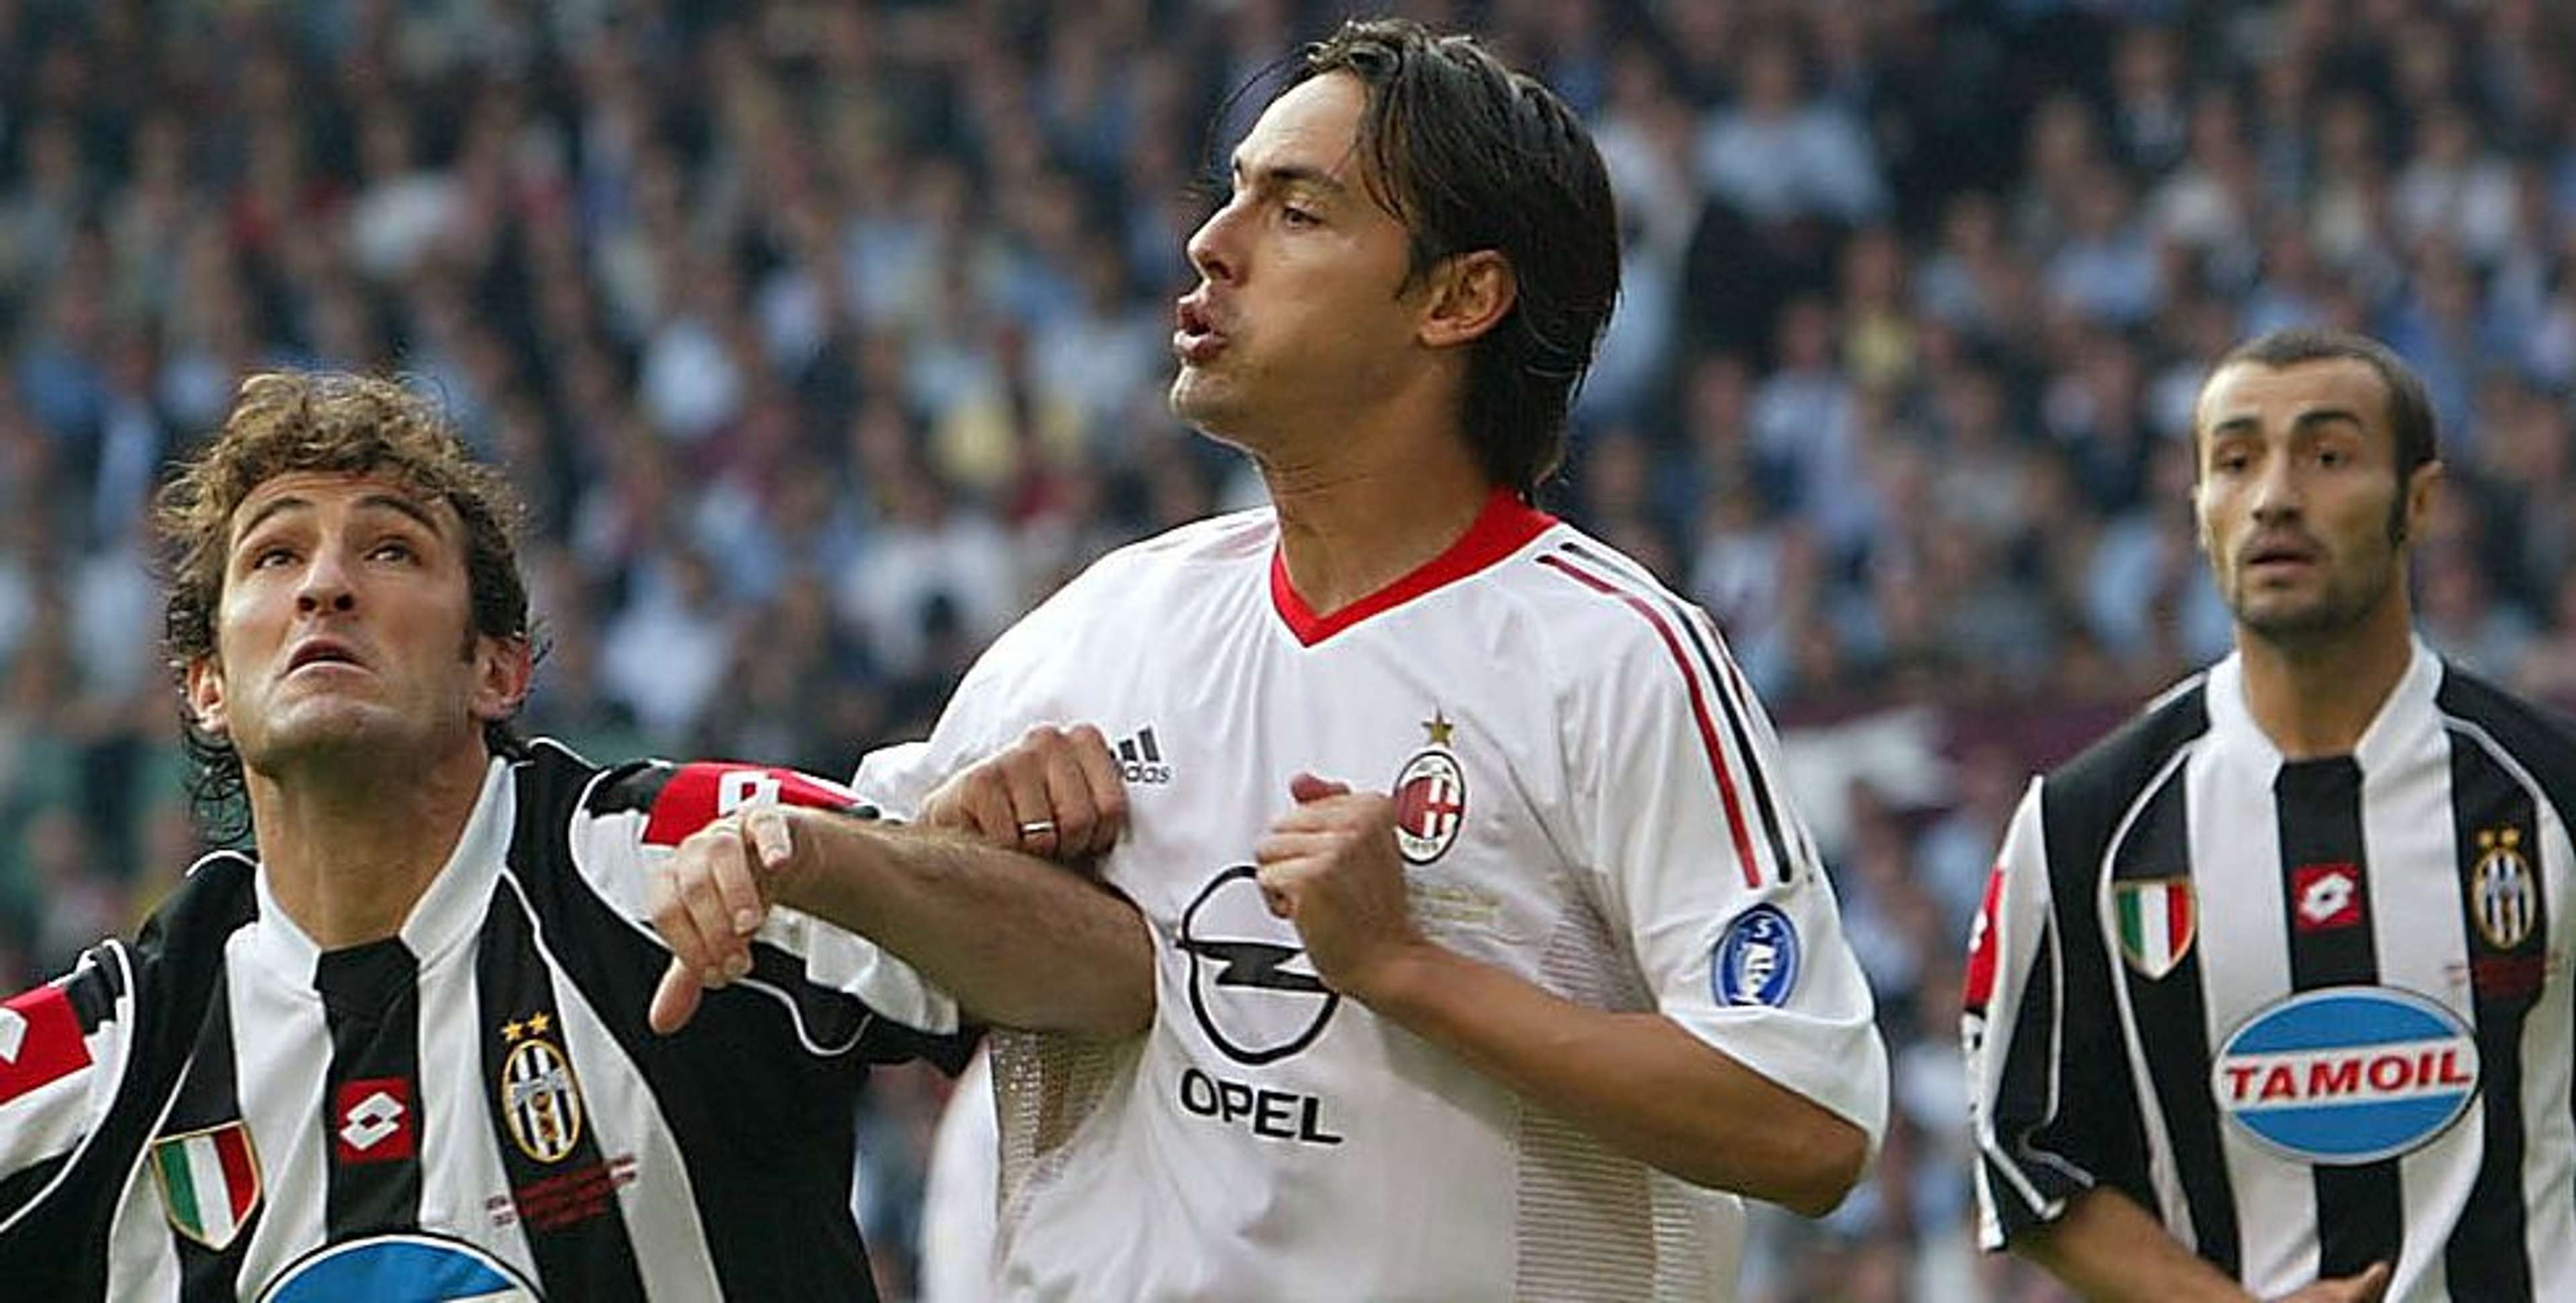 Inzaghi Milan Juventus 2003